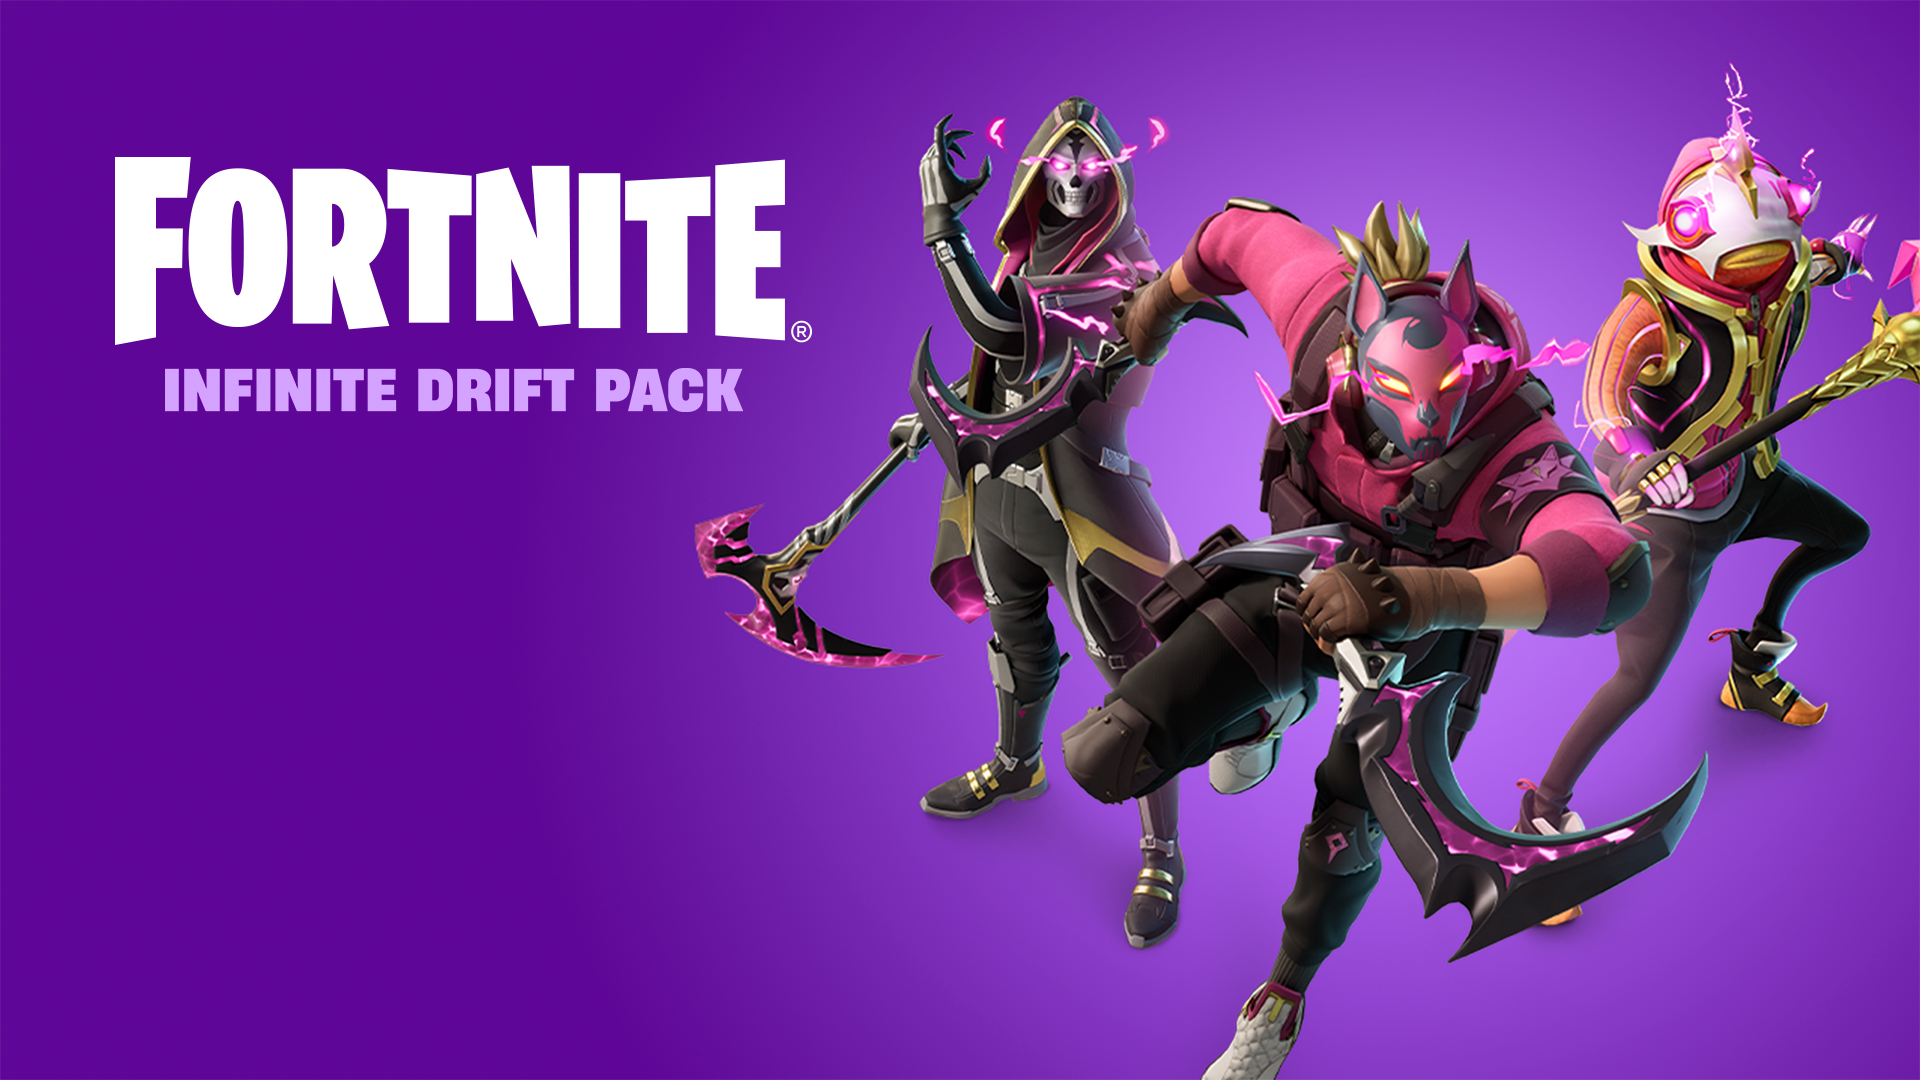 Fortnite - Infinite Drift Pack/Fortnite/Nintendo Switch/Nintendo